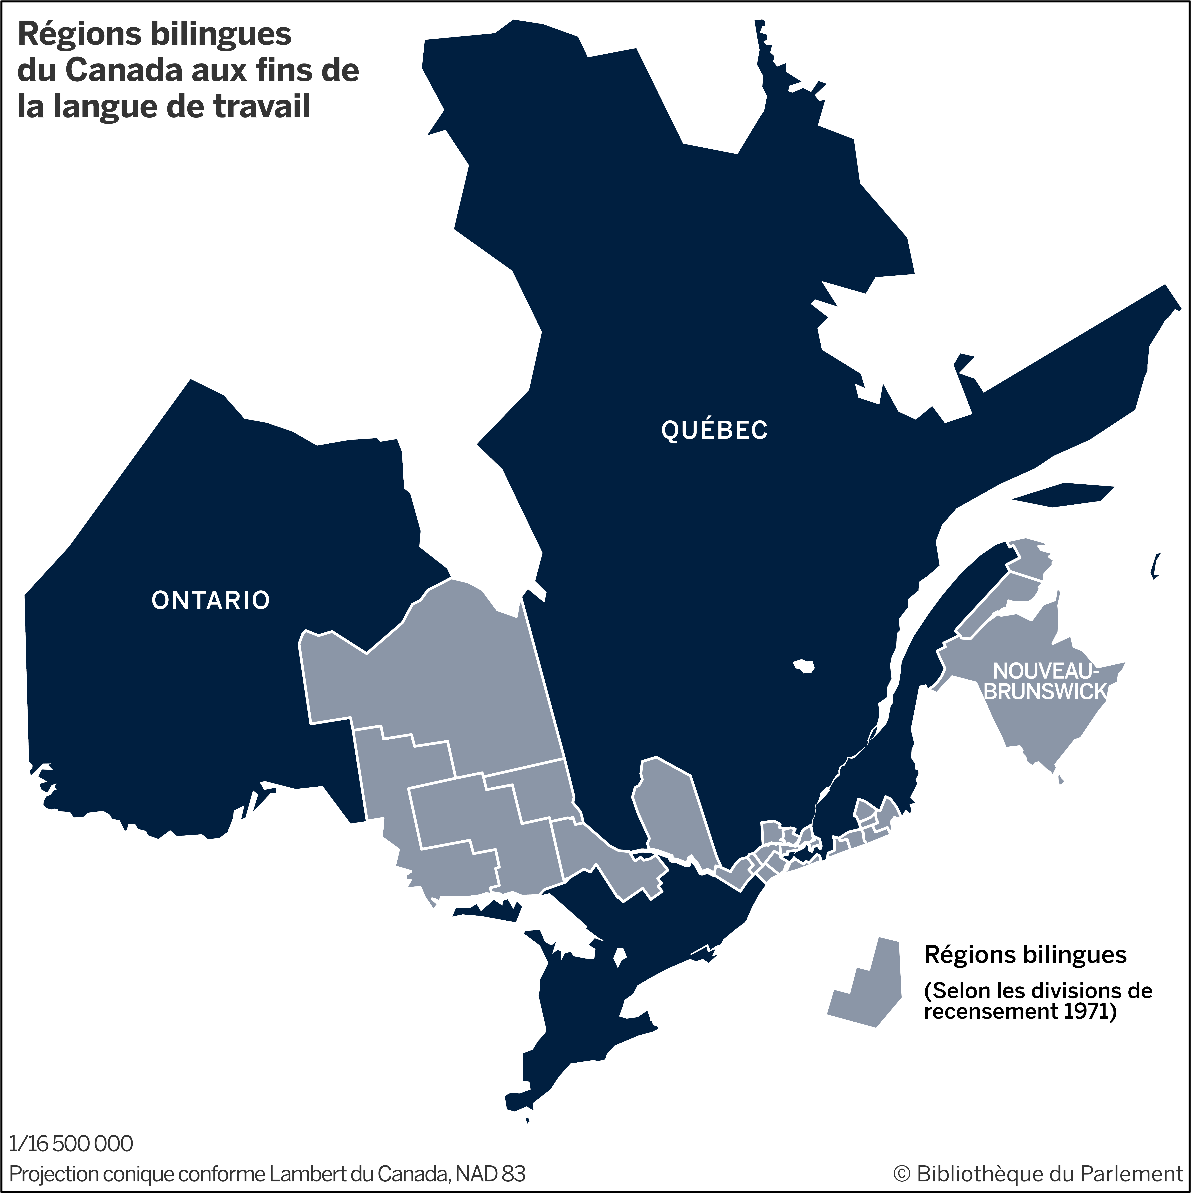 Les régions bilingues du Canada aux fins de la langue de travail, telles que déterminées par le gouvernement fédéral en 1977, comprennent la région de la capitale nationale, la province du Nouveau-Brunswick, certaines parties de la région métropolitaine de recensement de Montréal, certaines autres parties du Québec, ainsi que certaines parties de l'est et du nord de l'Ontario.